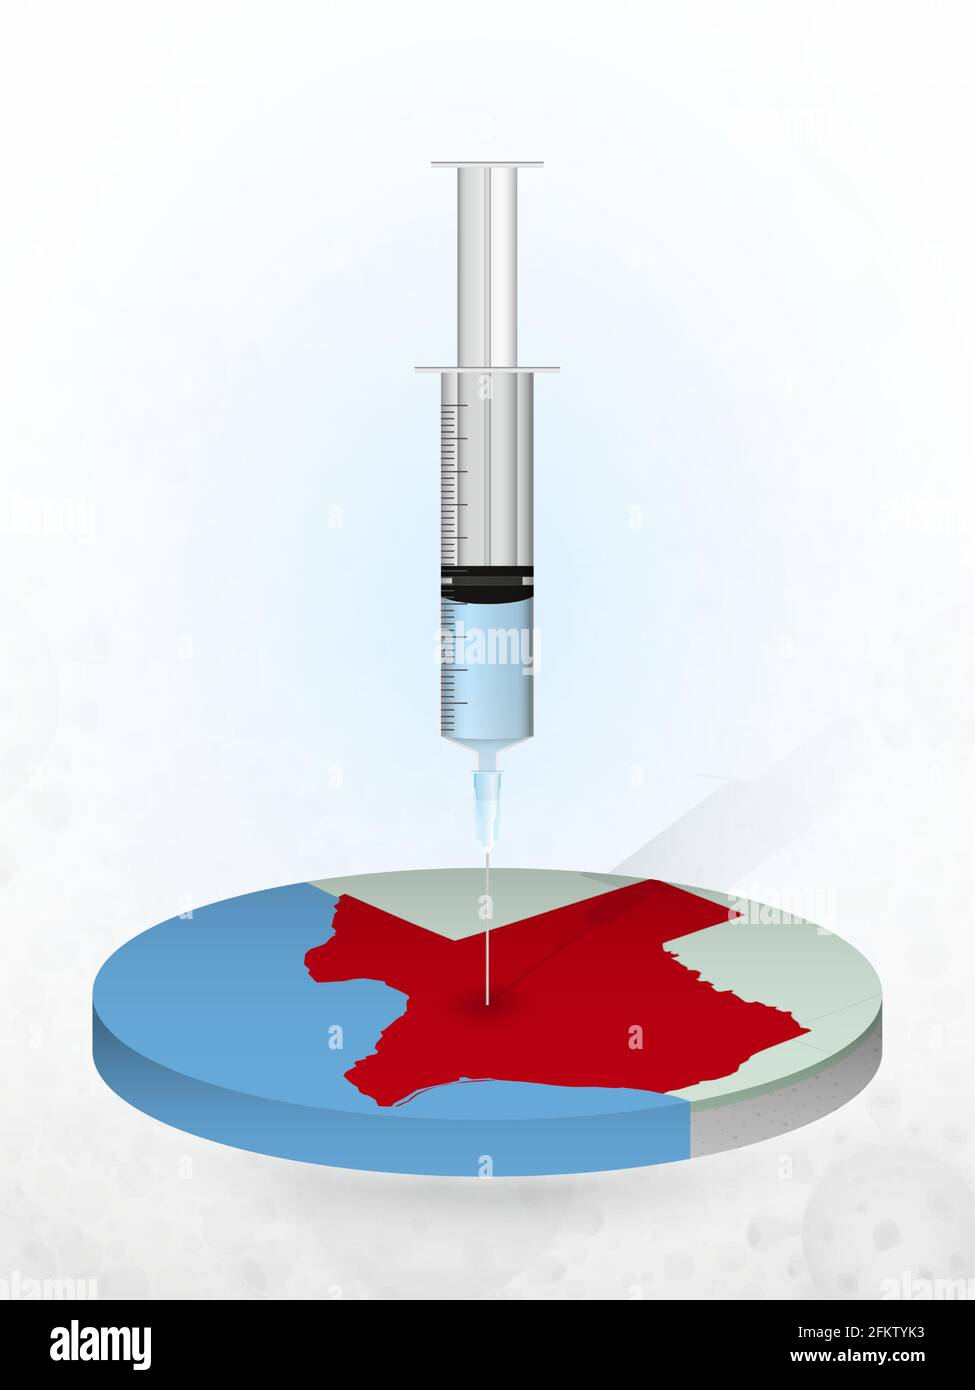 Vaccination du Texas, injection d'une seringue dans une carte du Texas. Illustration vectorielle d'une seringue avec vaccin et MAP. Illustration de Vecteur